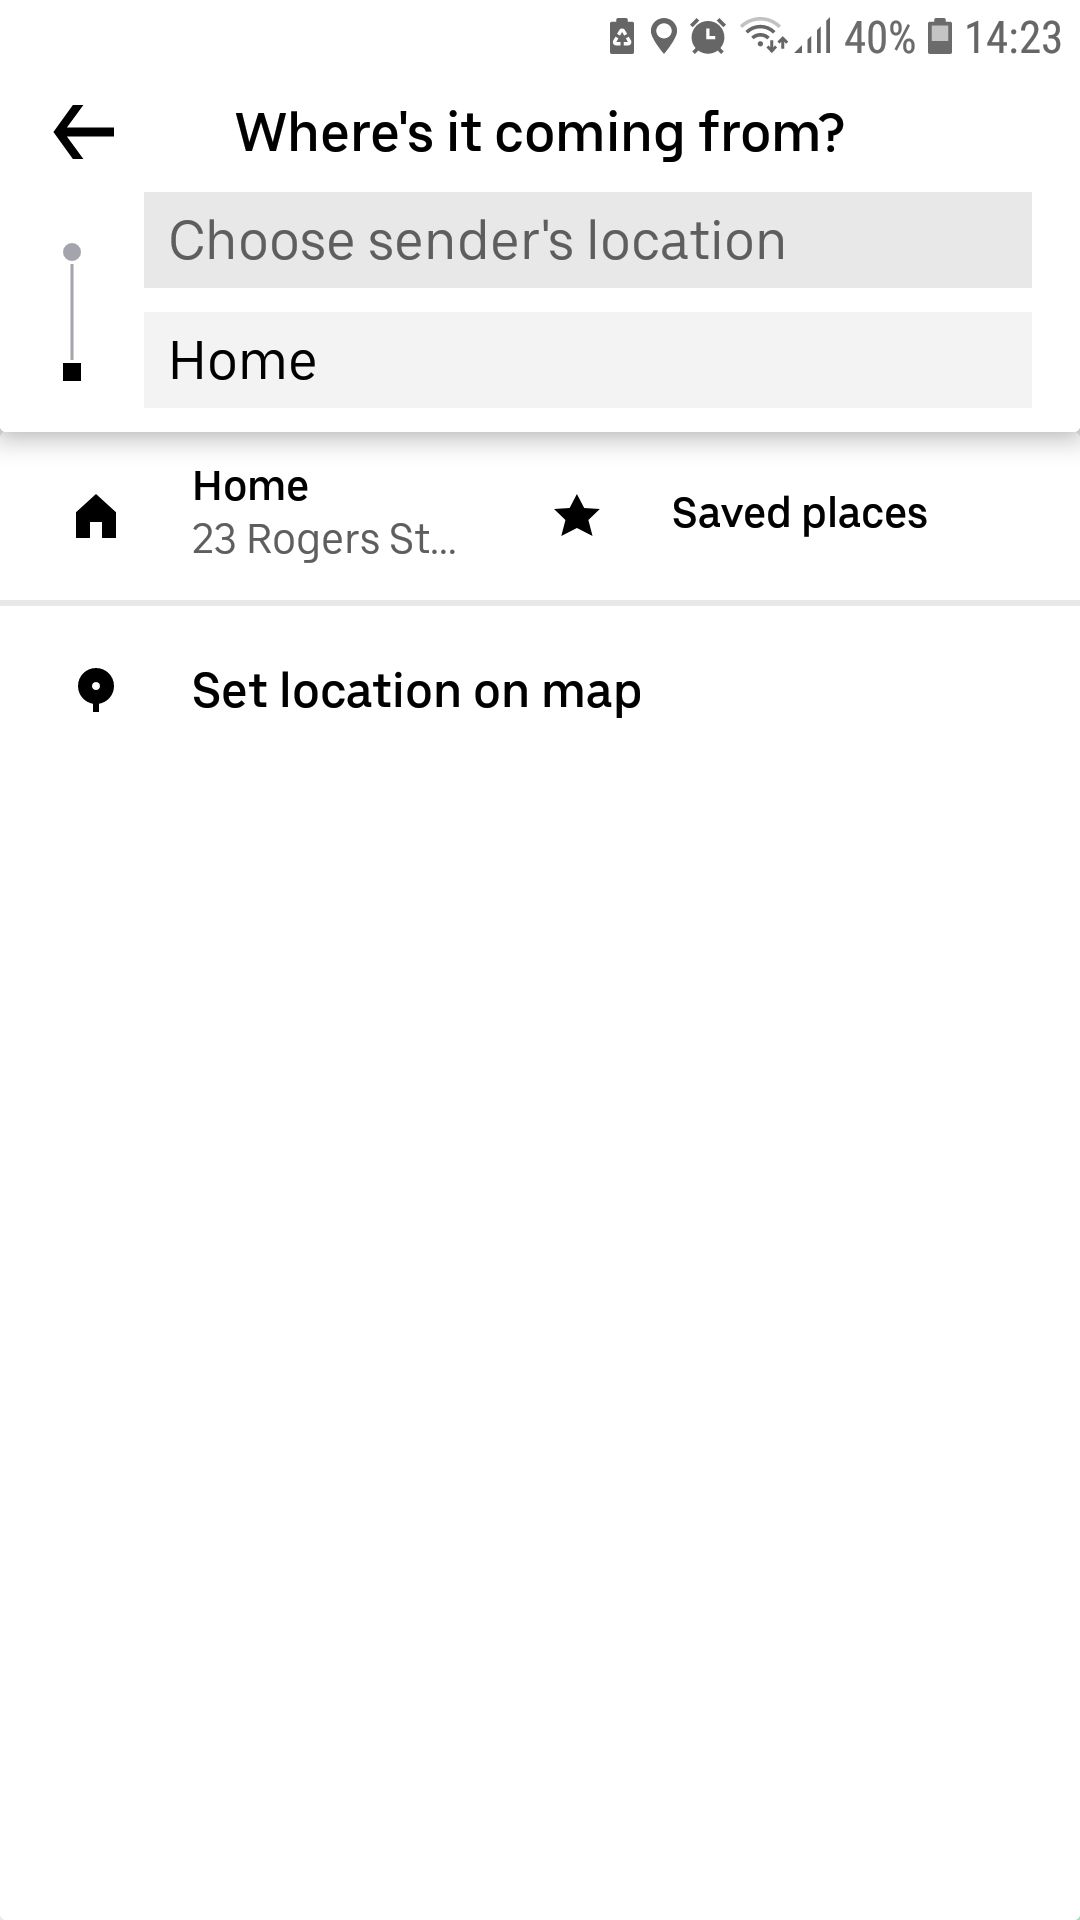 L'application mobile Uber choisit l'emplacement de l'expéditeur